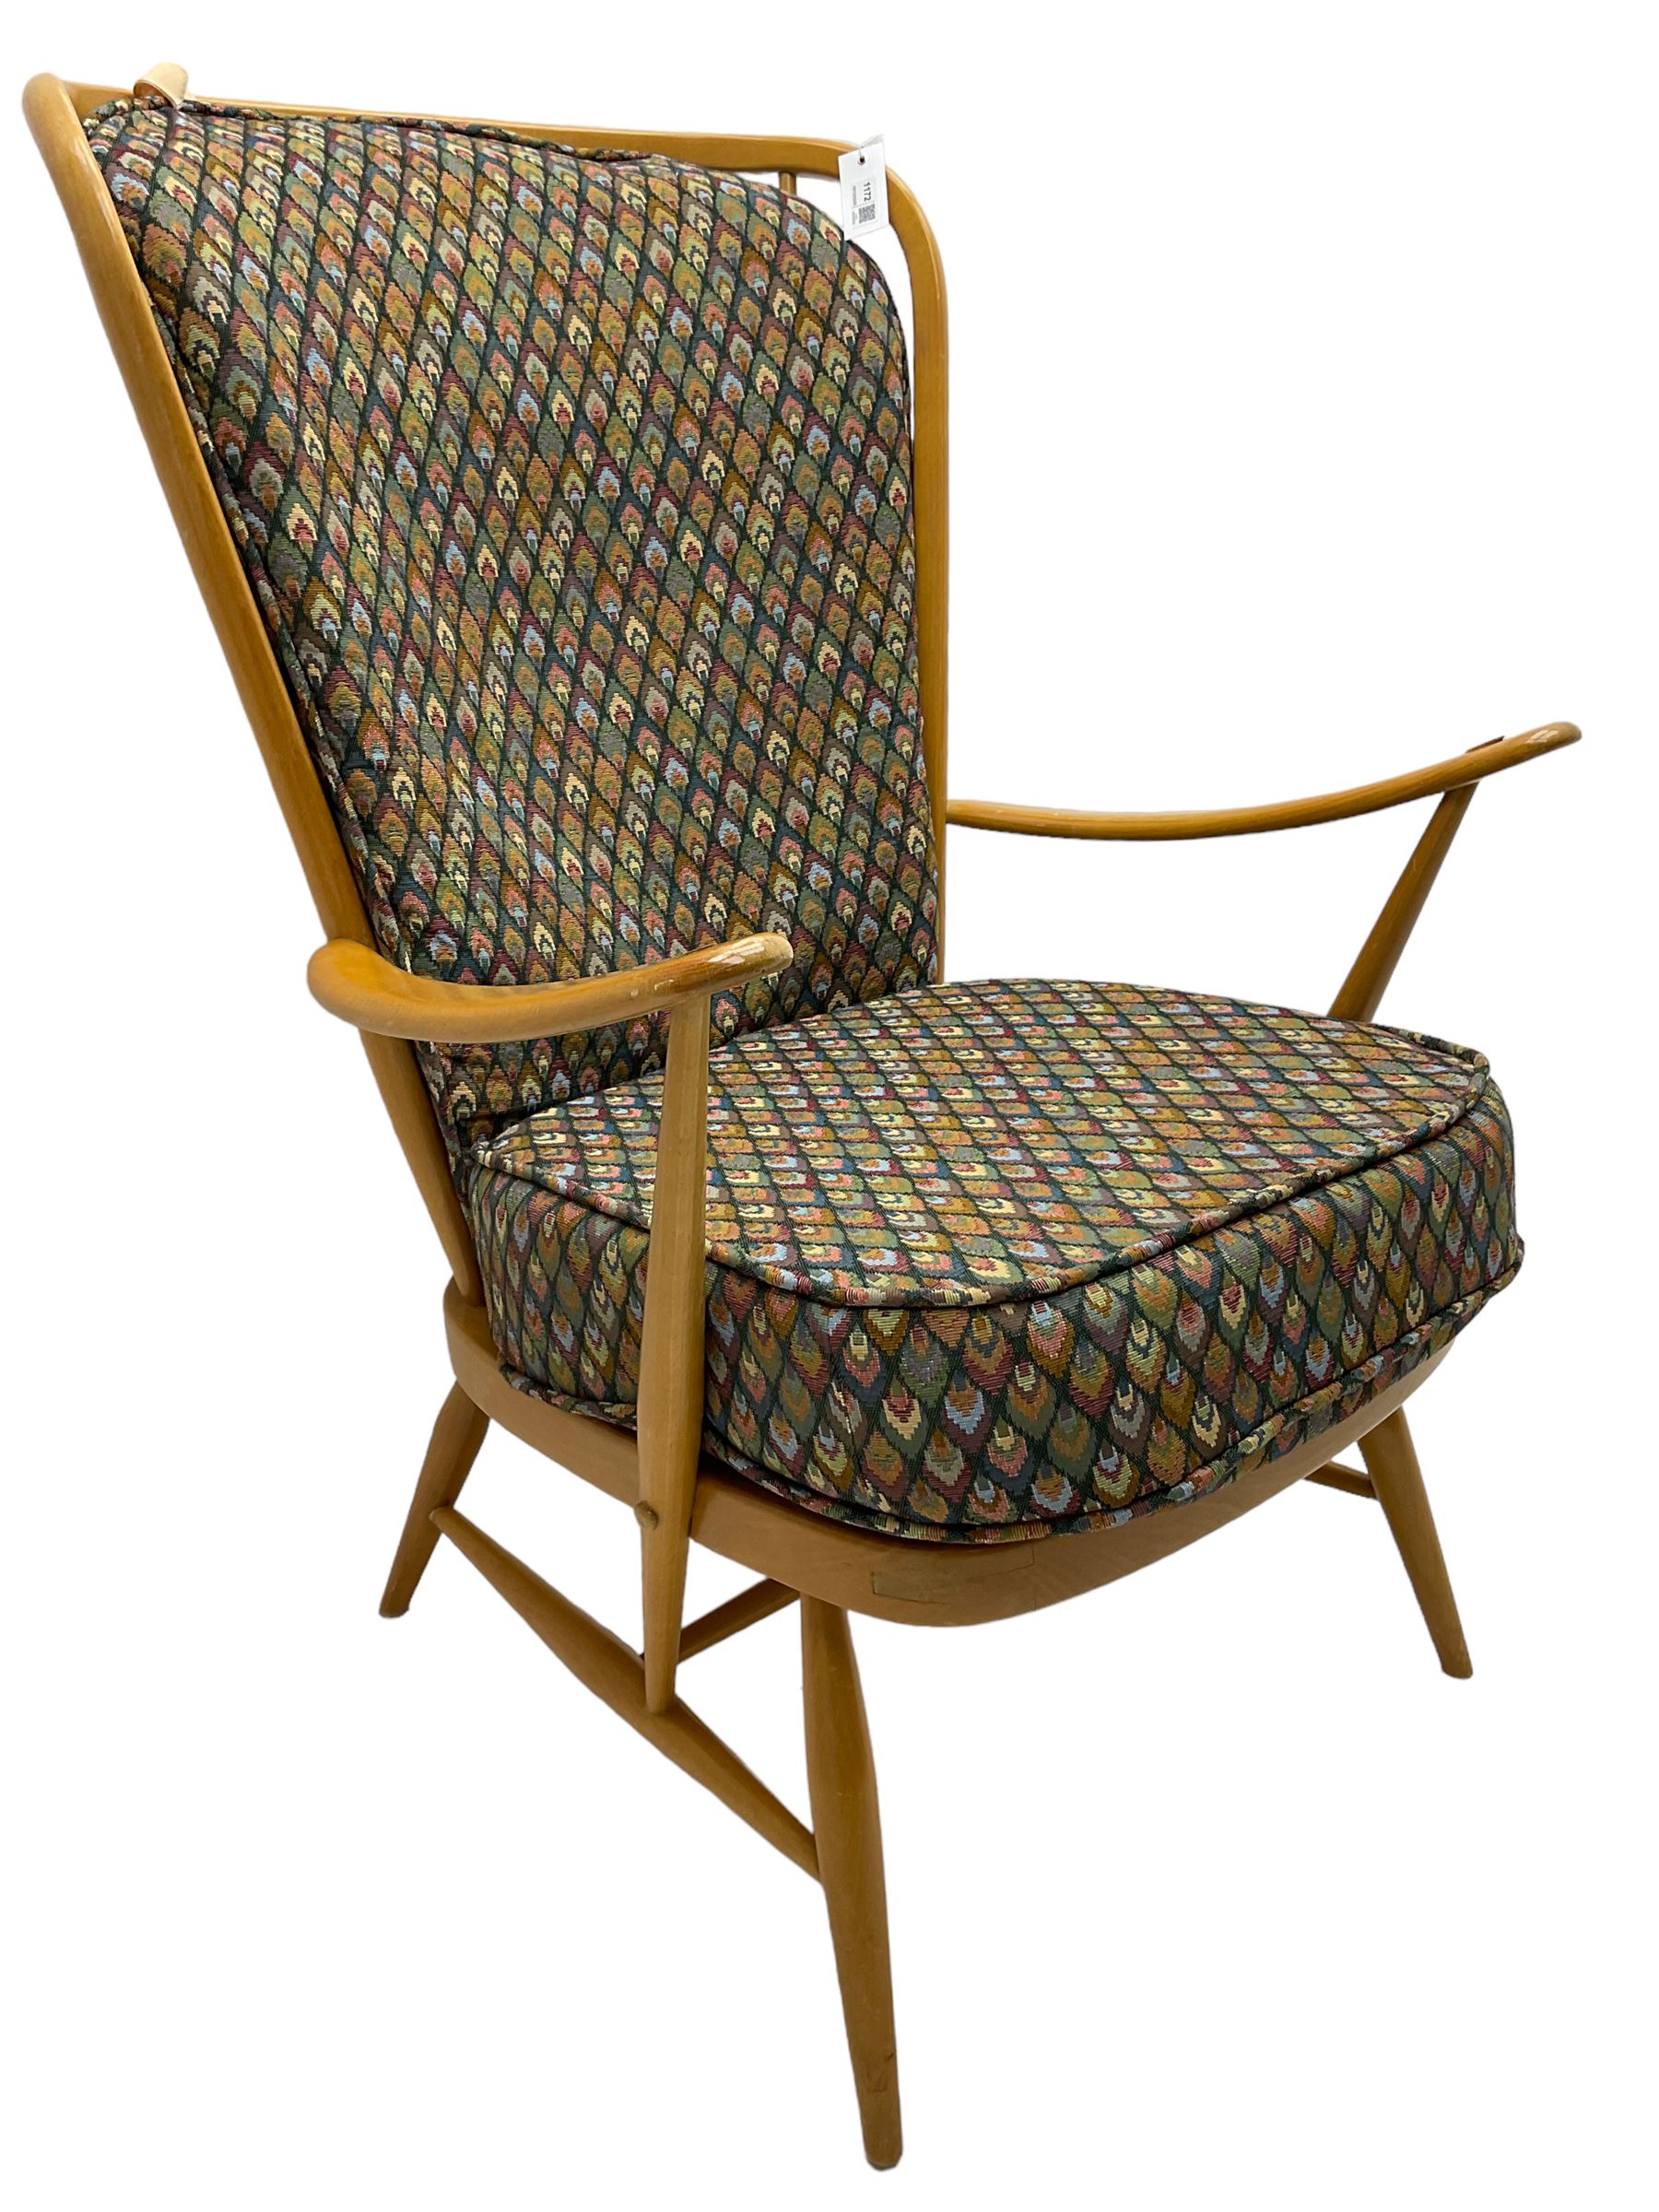 Ercol - light beech framed high-back 'Windsor' easy chair - Image 2 of 7